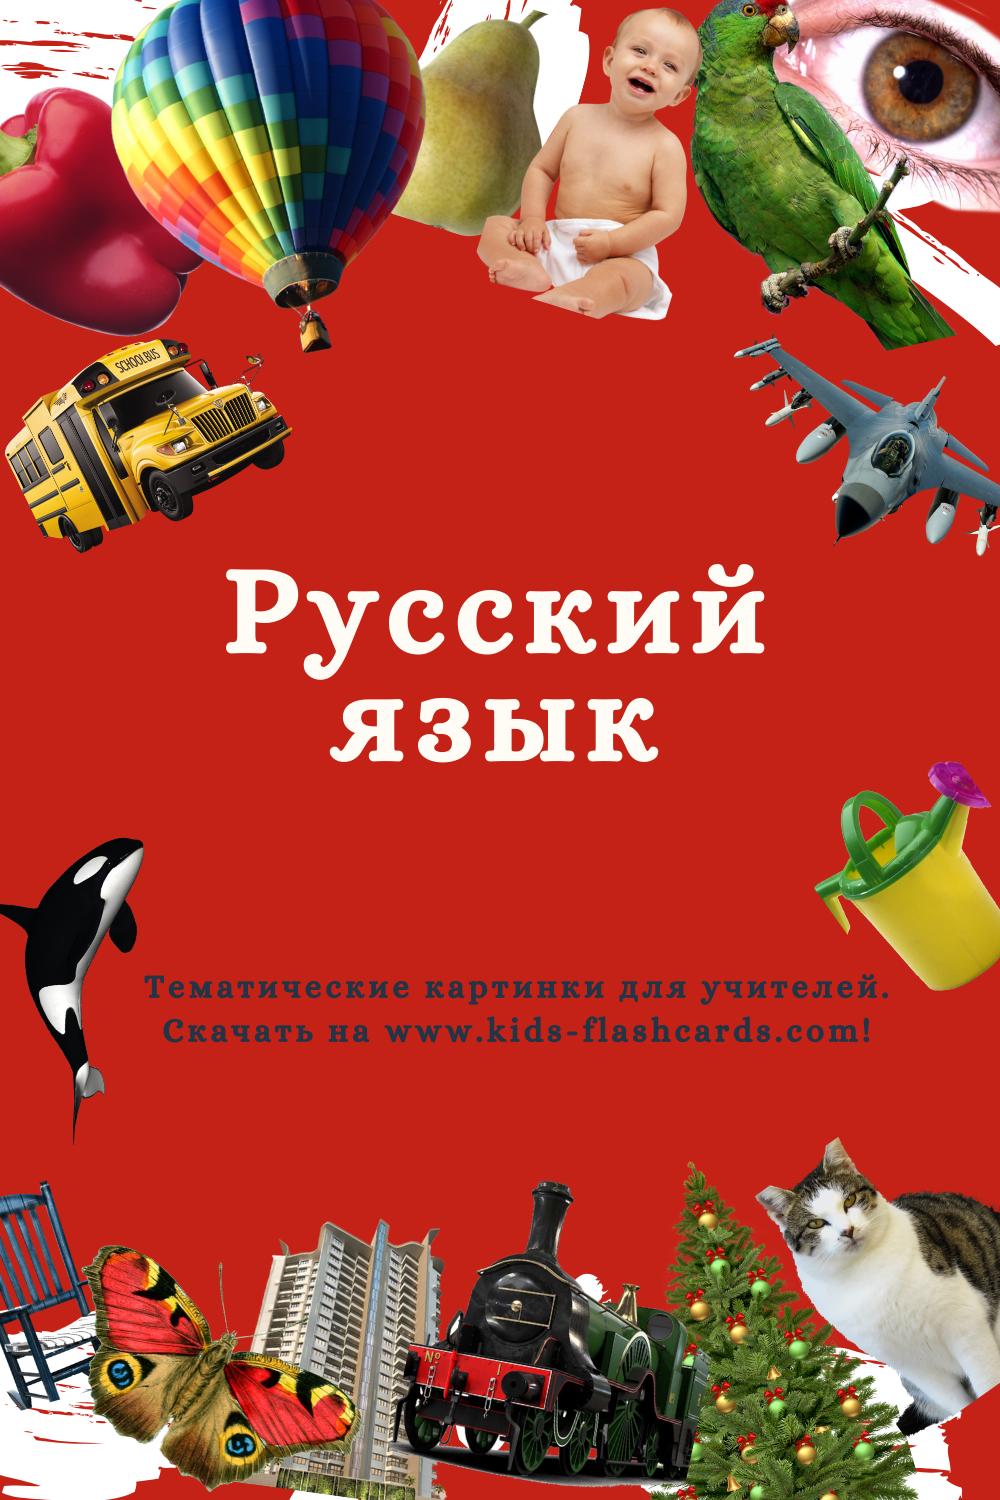 Русский язык - распечатки для детей